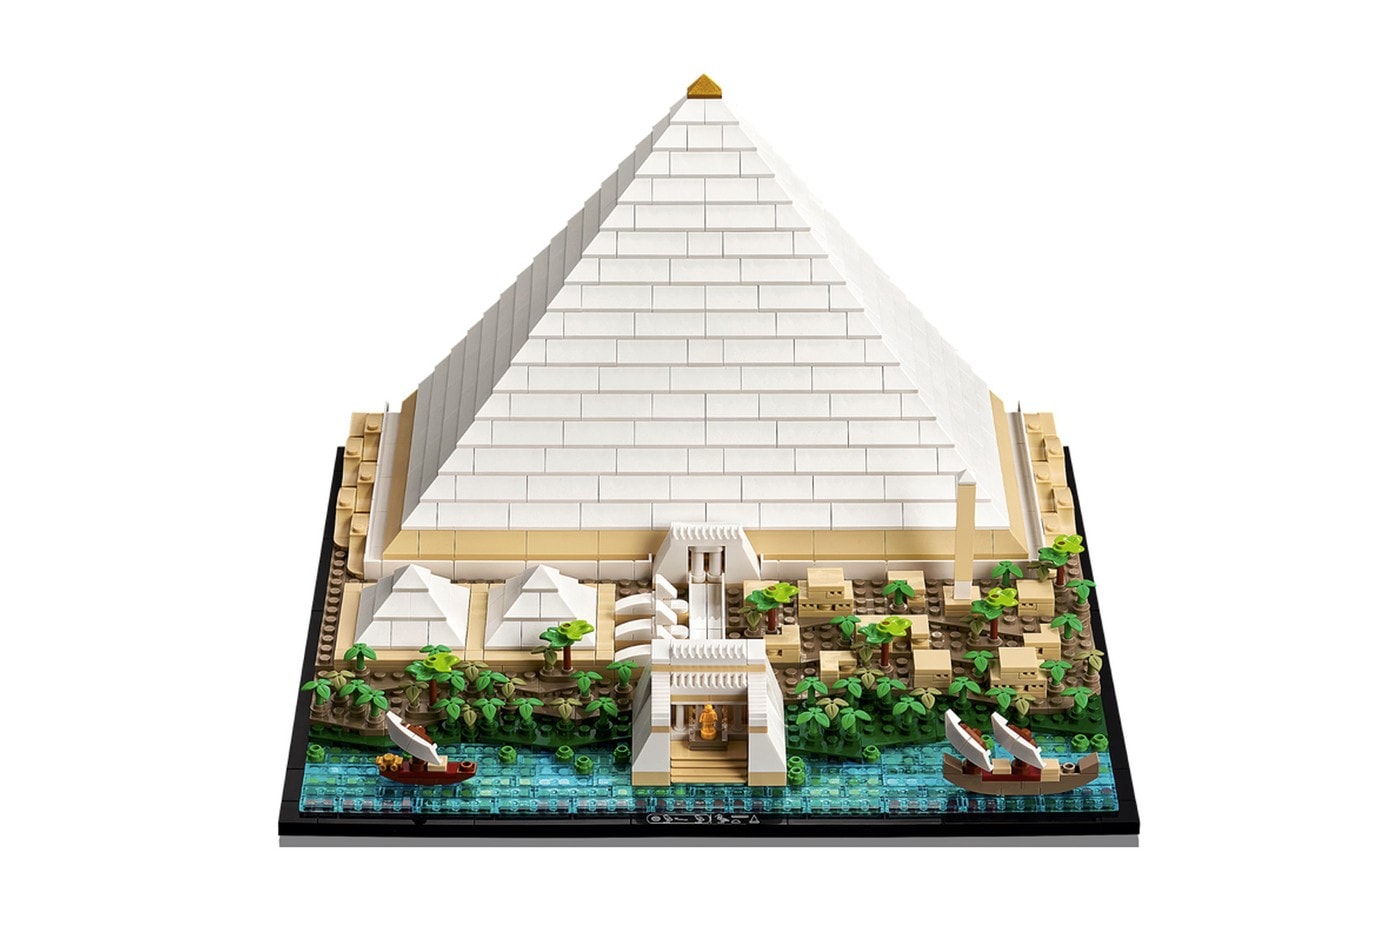 LEGO 推出全新埃及胡夫金字塔积木套装